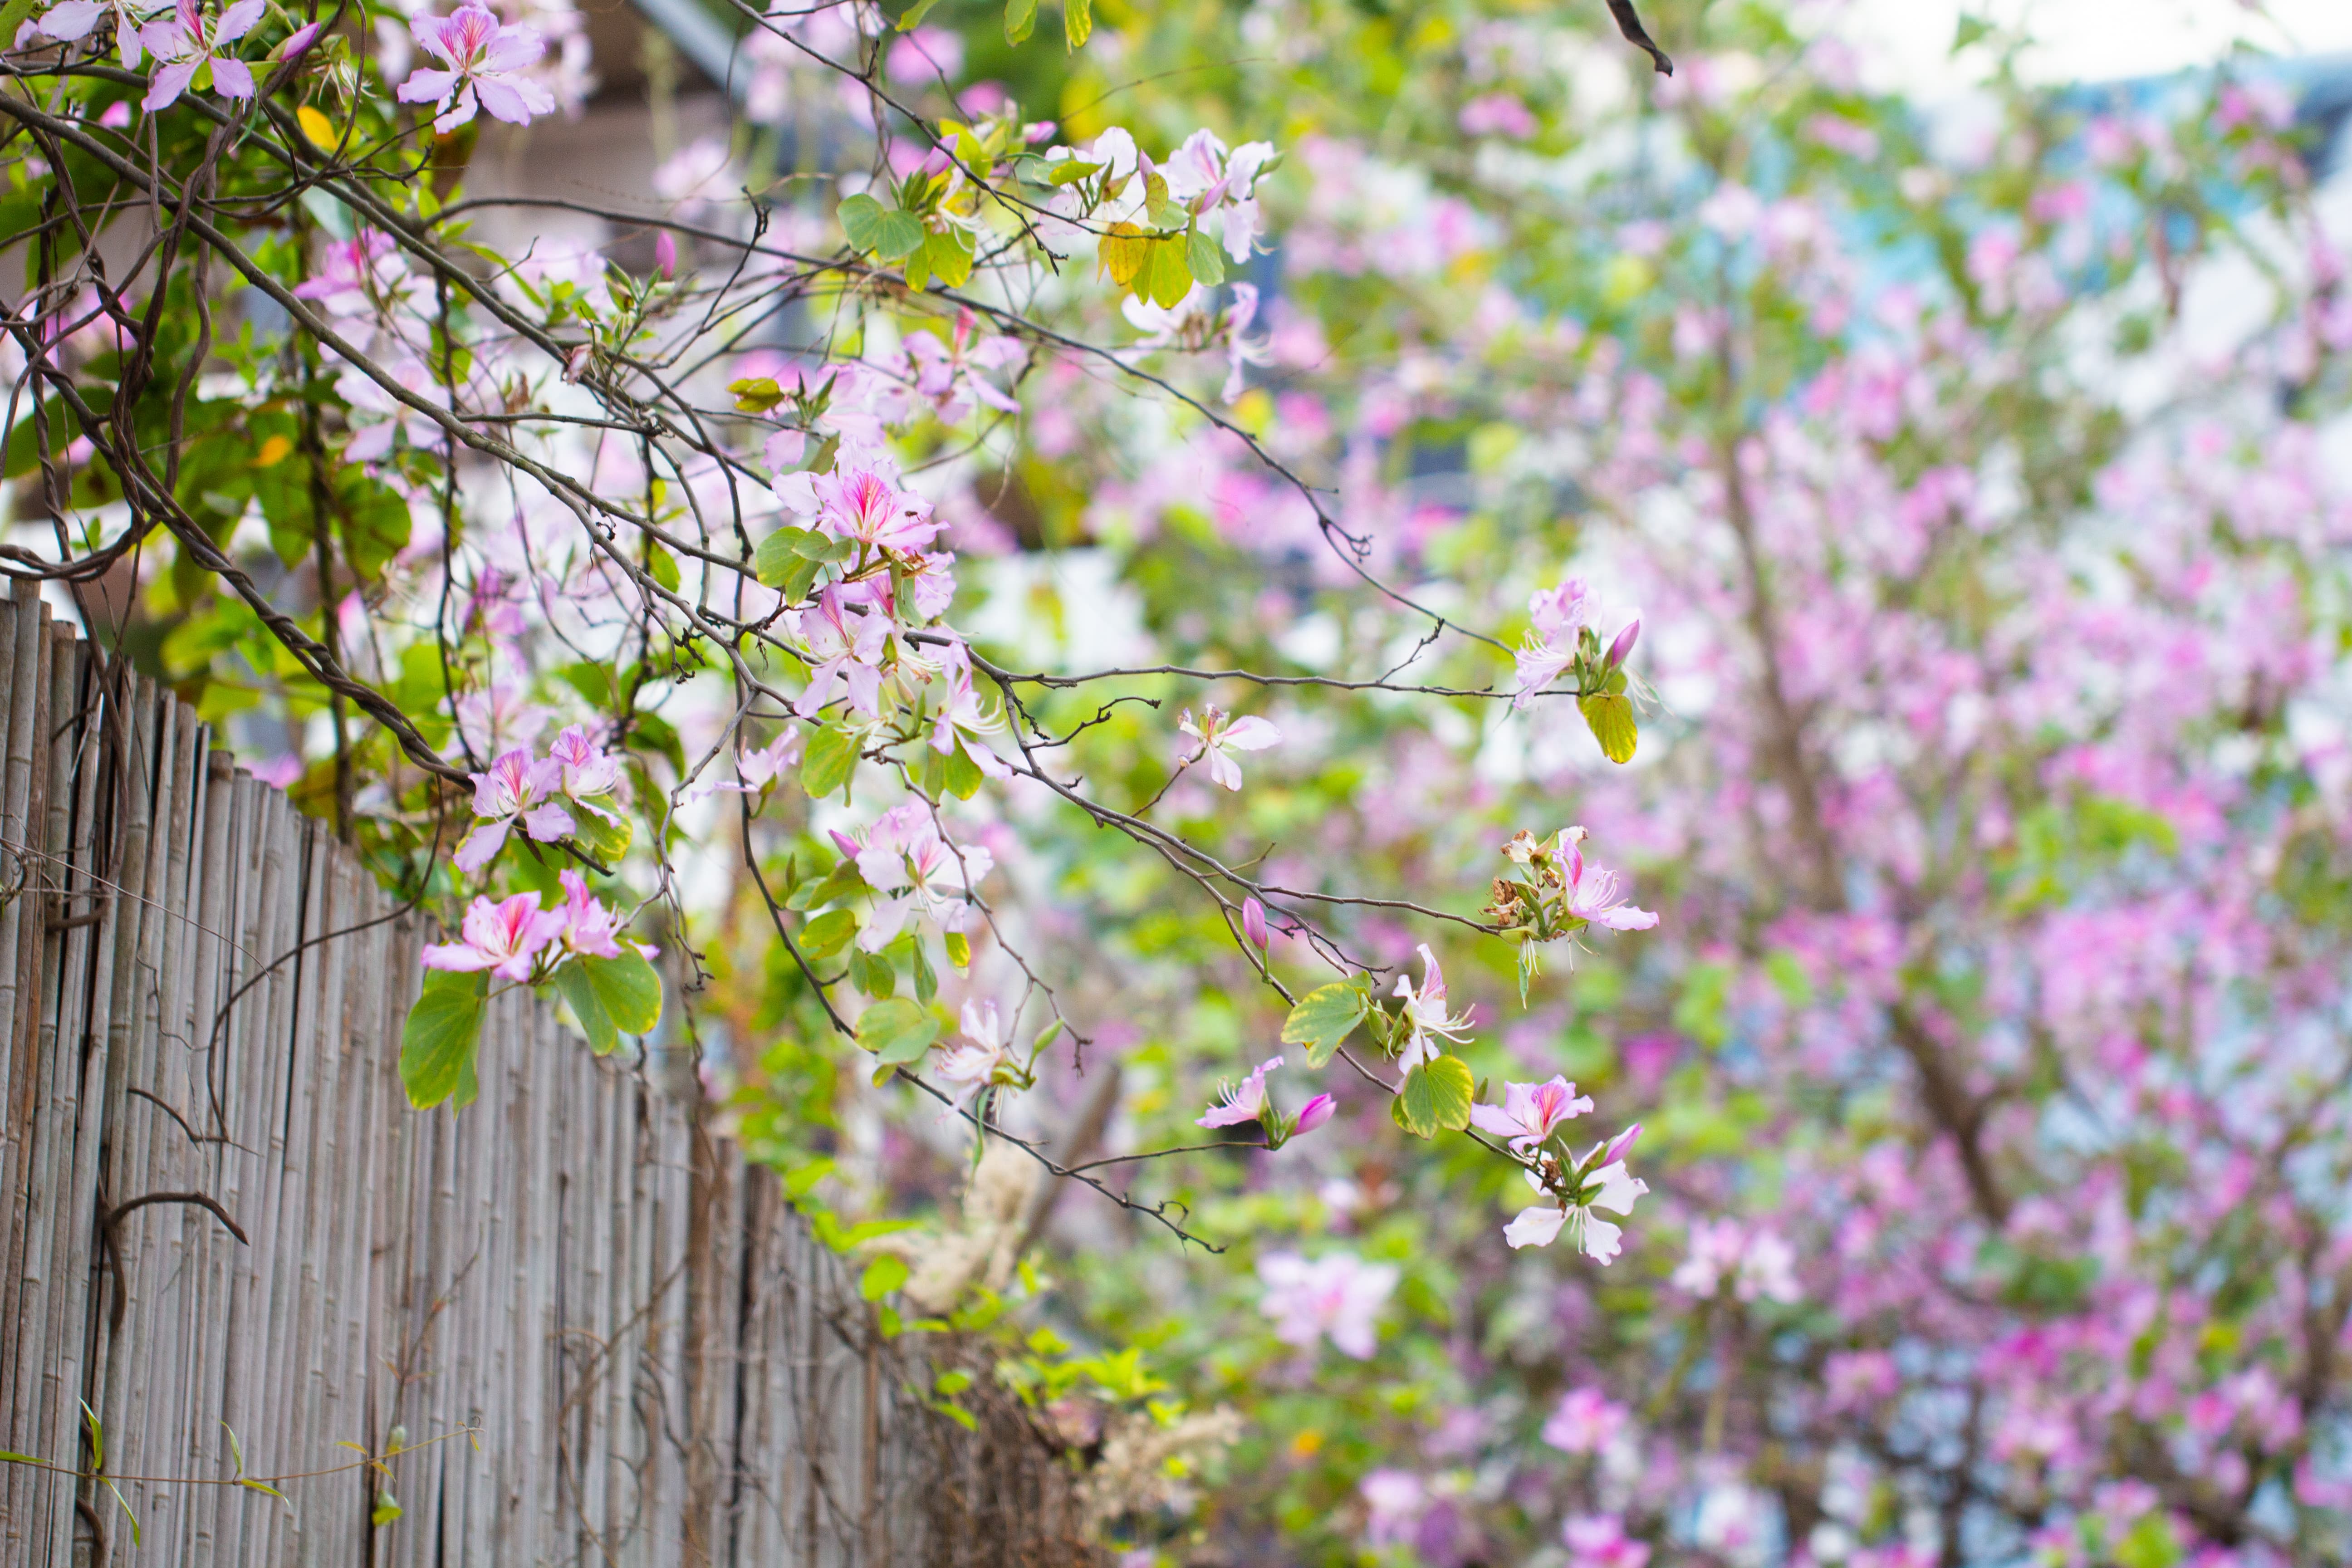 有一种唯美意境,叫竹篱笆外的紫荆花,简直越看越美!